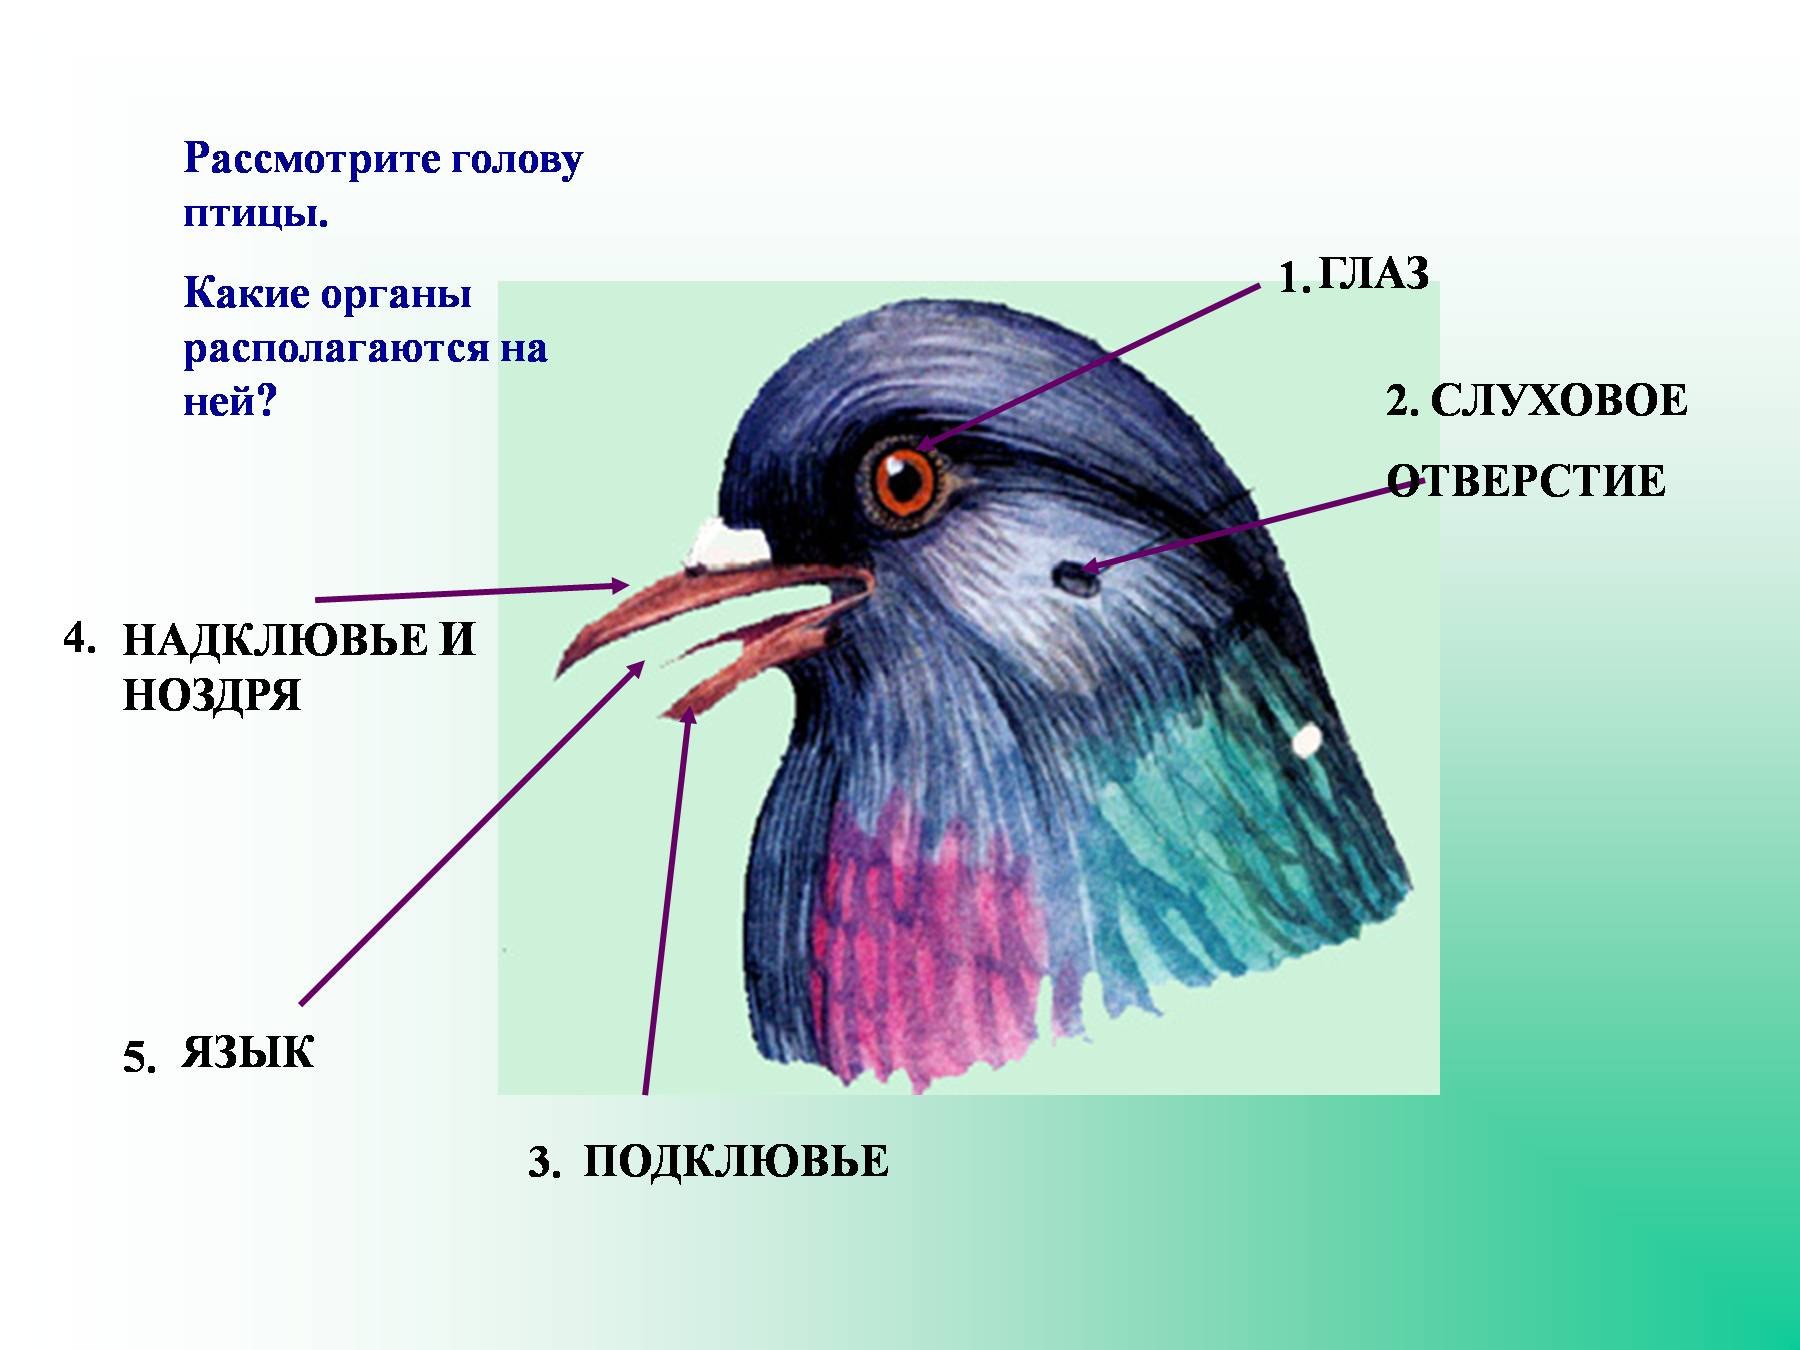 Затылок зрение. Органы чувств птиц 7 класс биология. Внешнее строение голубя 7 класс биология. Органы чувств птиц анатомия. Внешнее строение птицы голубь.